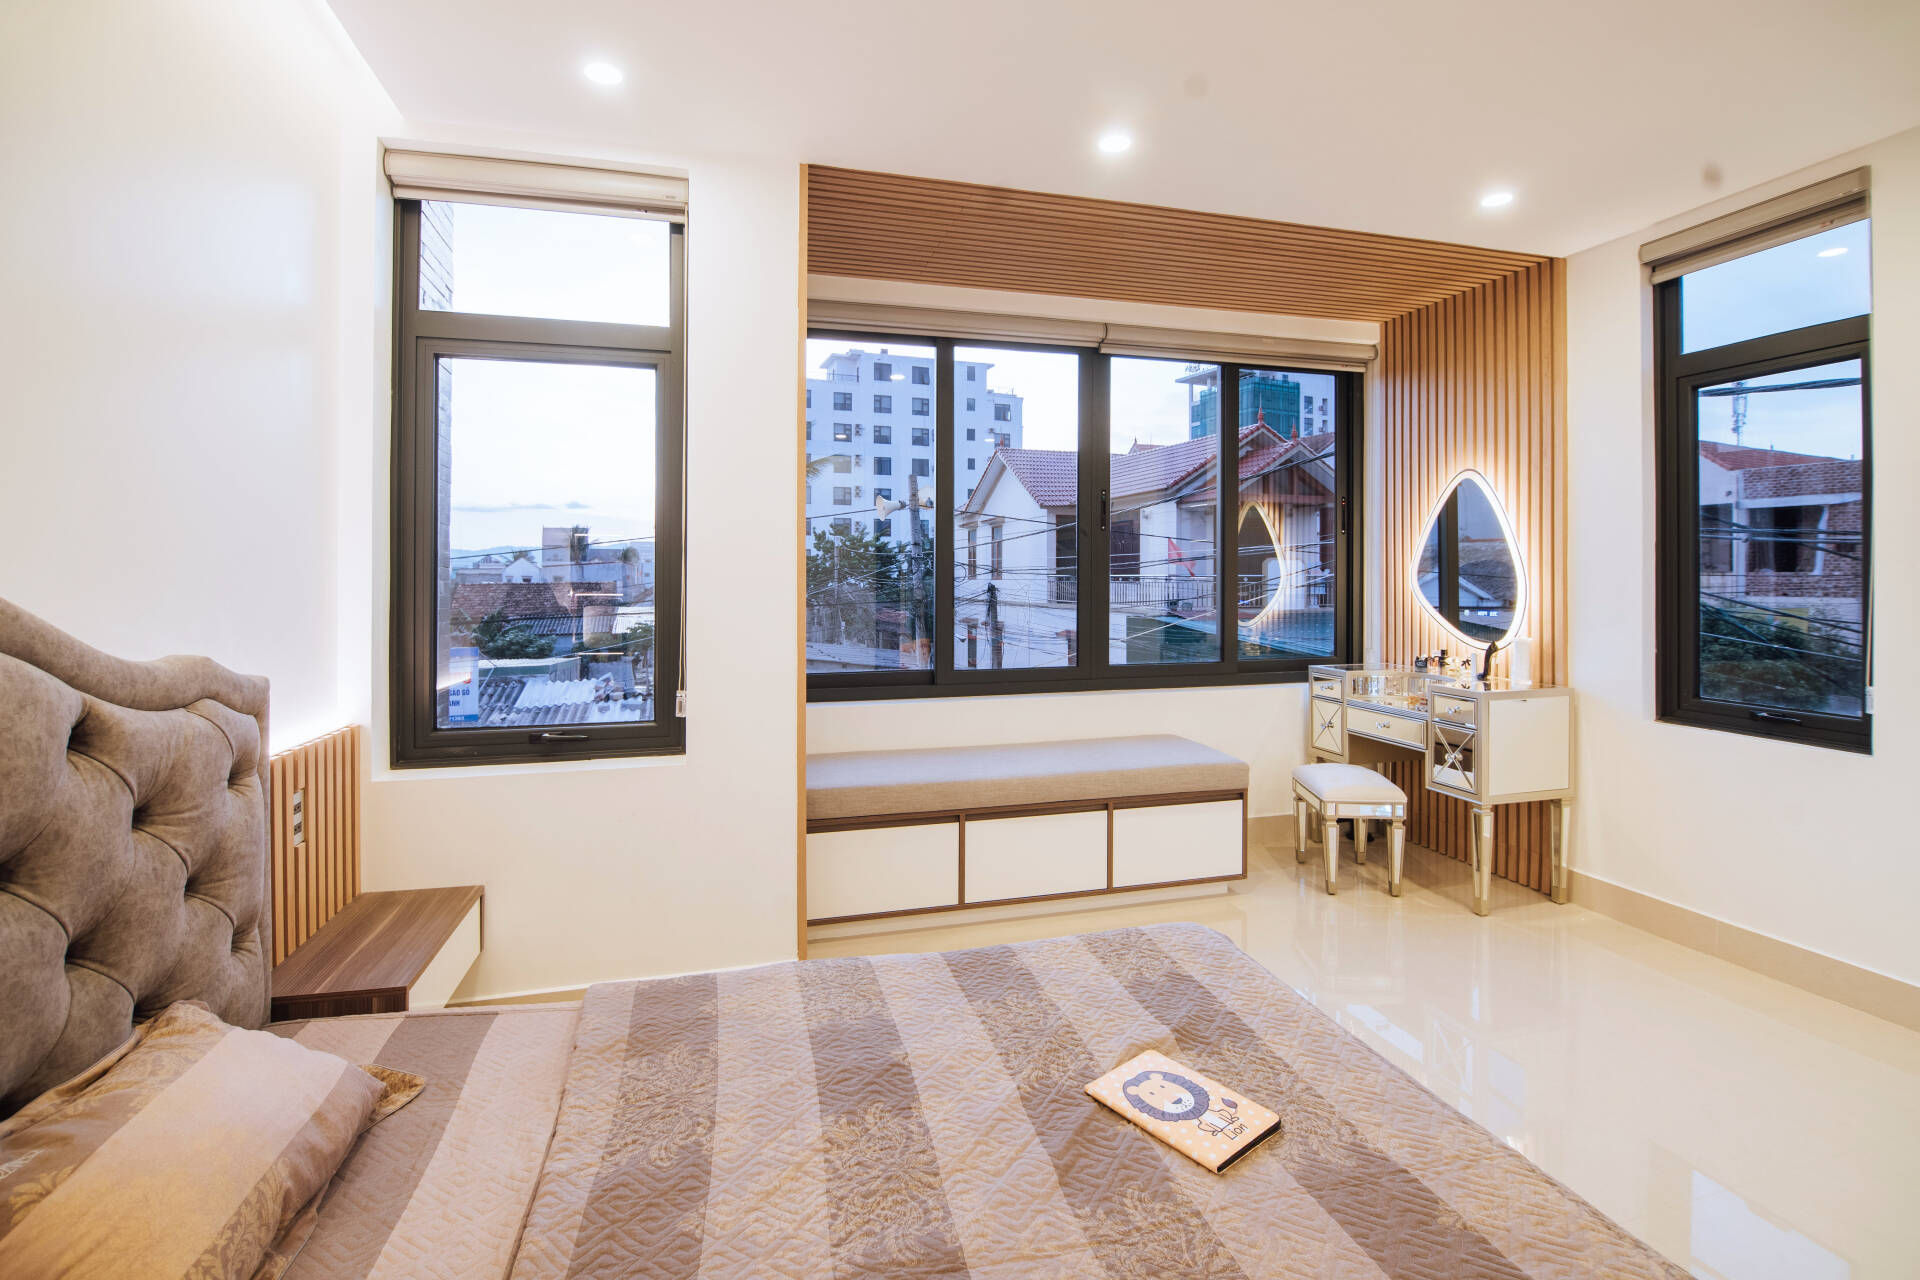  Để tạo điểm nhấn cho căn phòng, nhóm thiết kế sử dụng những lam gỗ ốp phần khung cạnh cửa sổ cùng tường đầu giường 